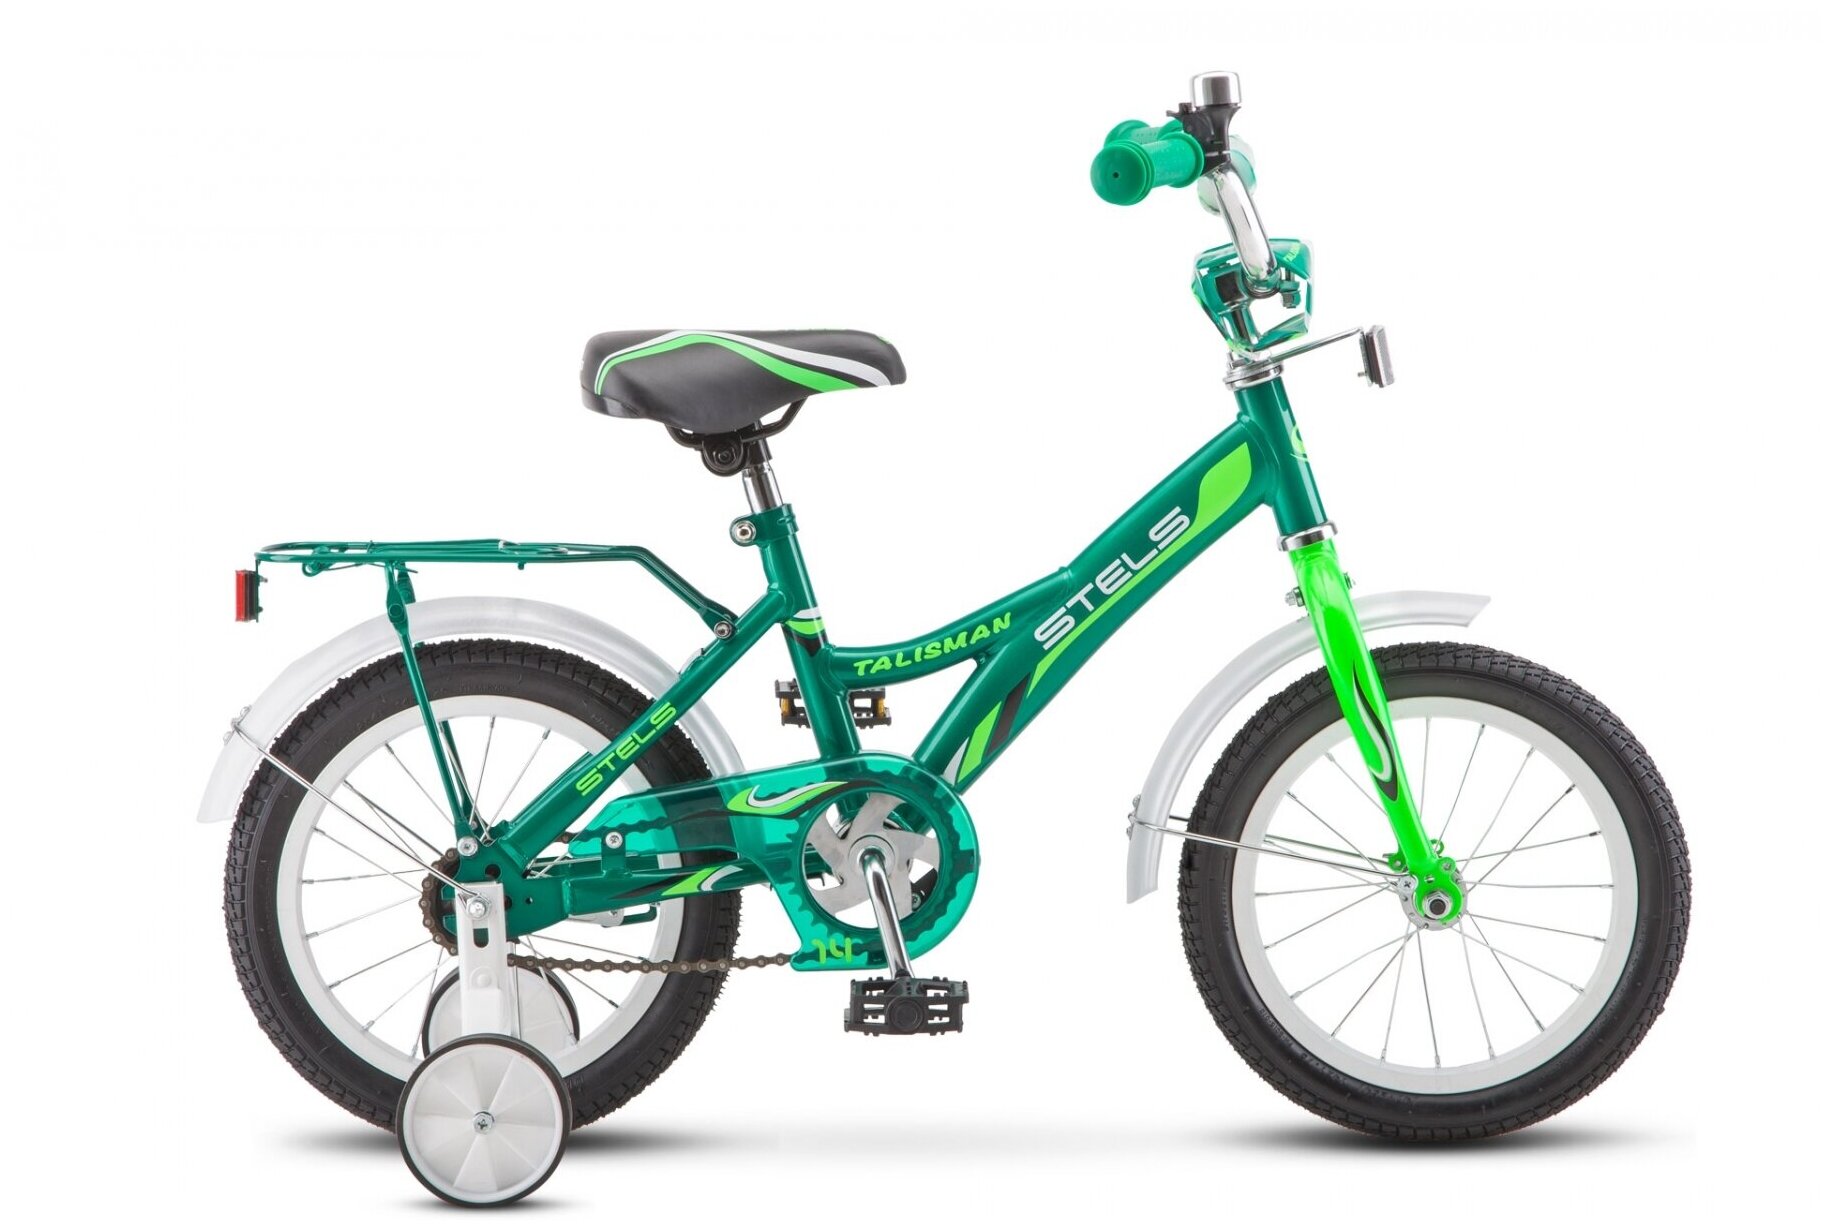 Велосипед 14 детский Talisman (2018) количество скоростей 1 рама сталь 9,5 зеленый